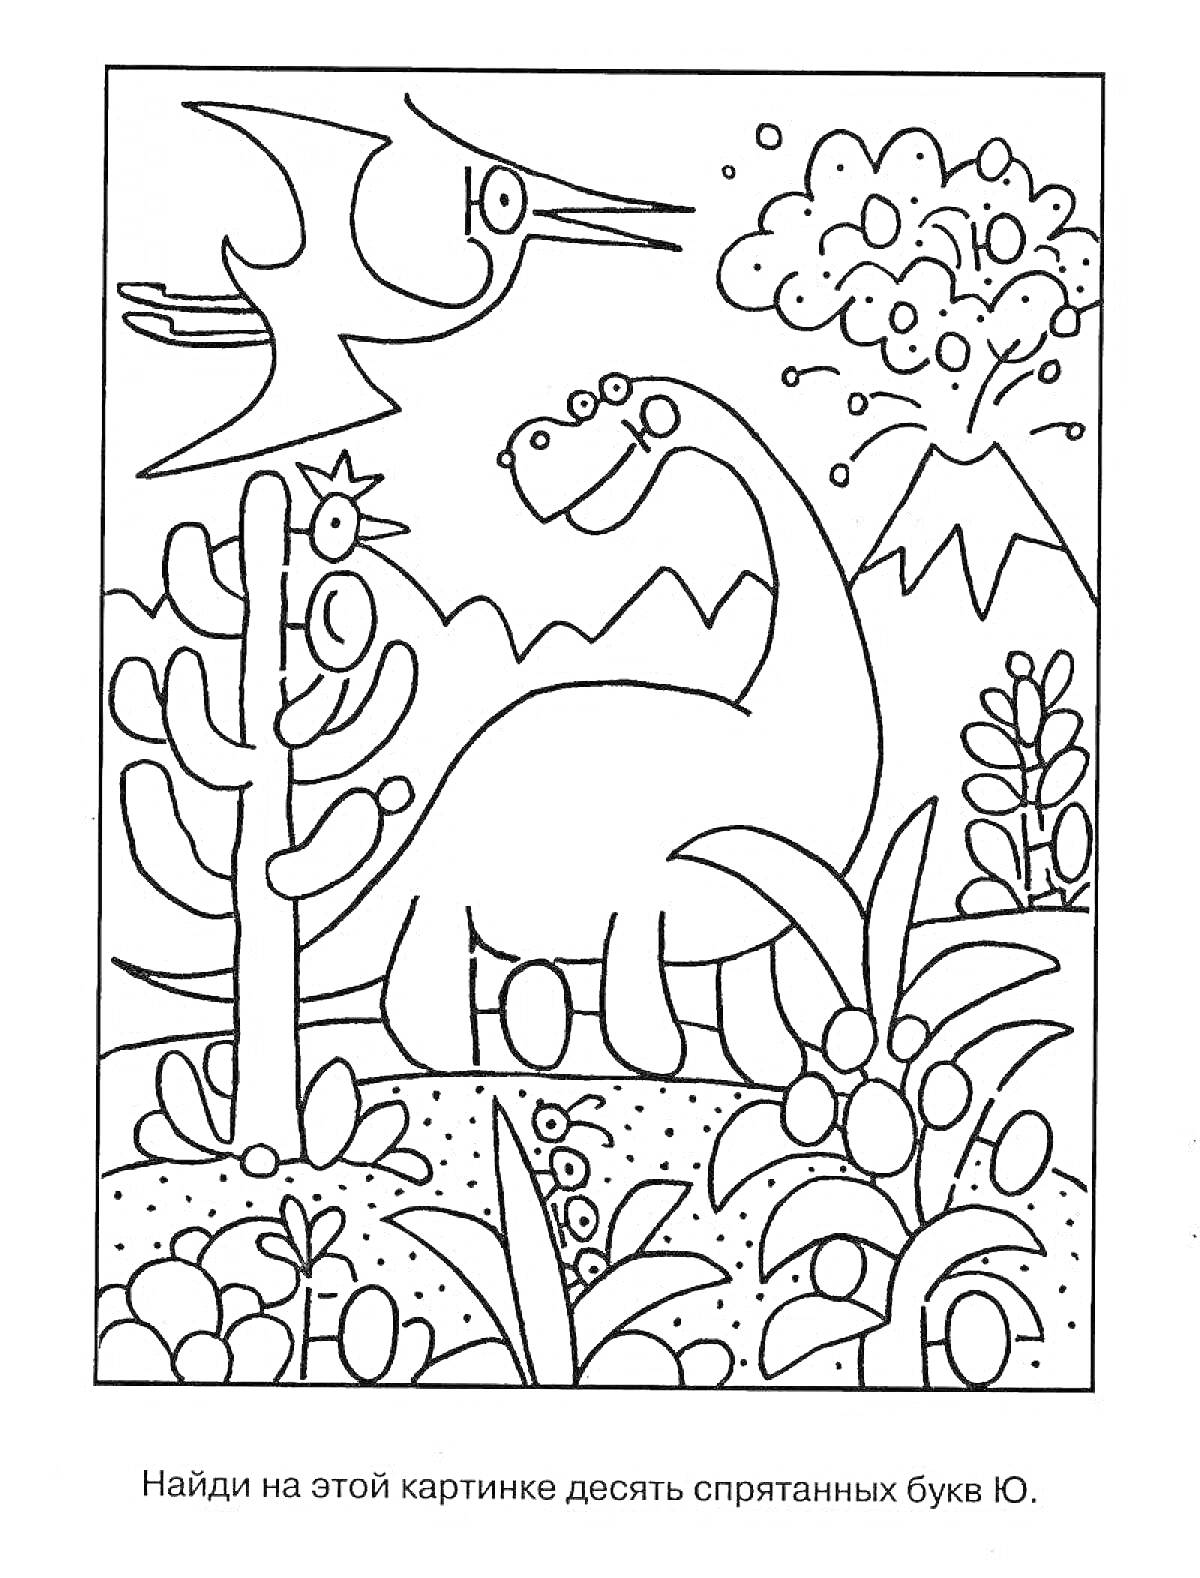 На раскраске изображено: Динозавр, Буква Ю, Дошкольники, Природа, Деревья, Кусты, Птеродактиль, Вулкан, Камни, Солнечная погода